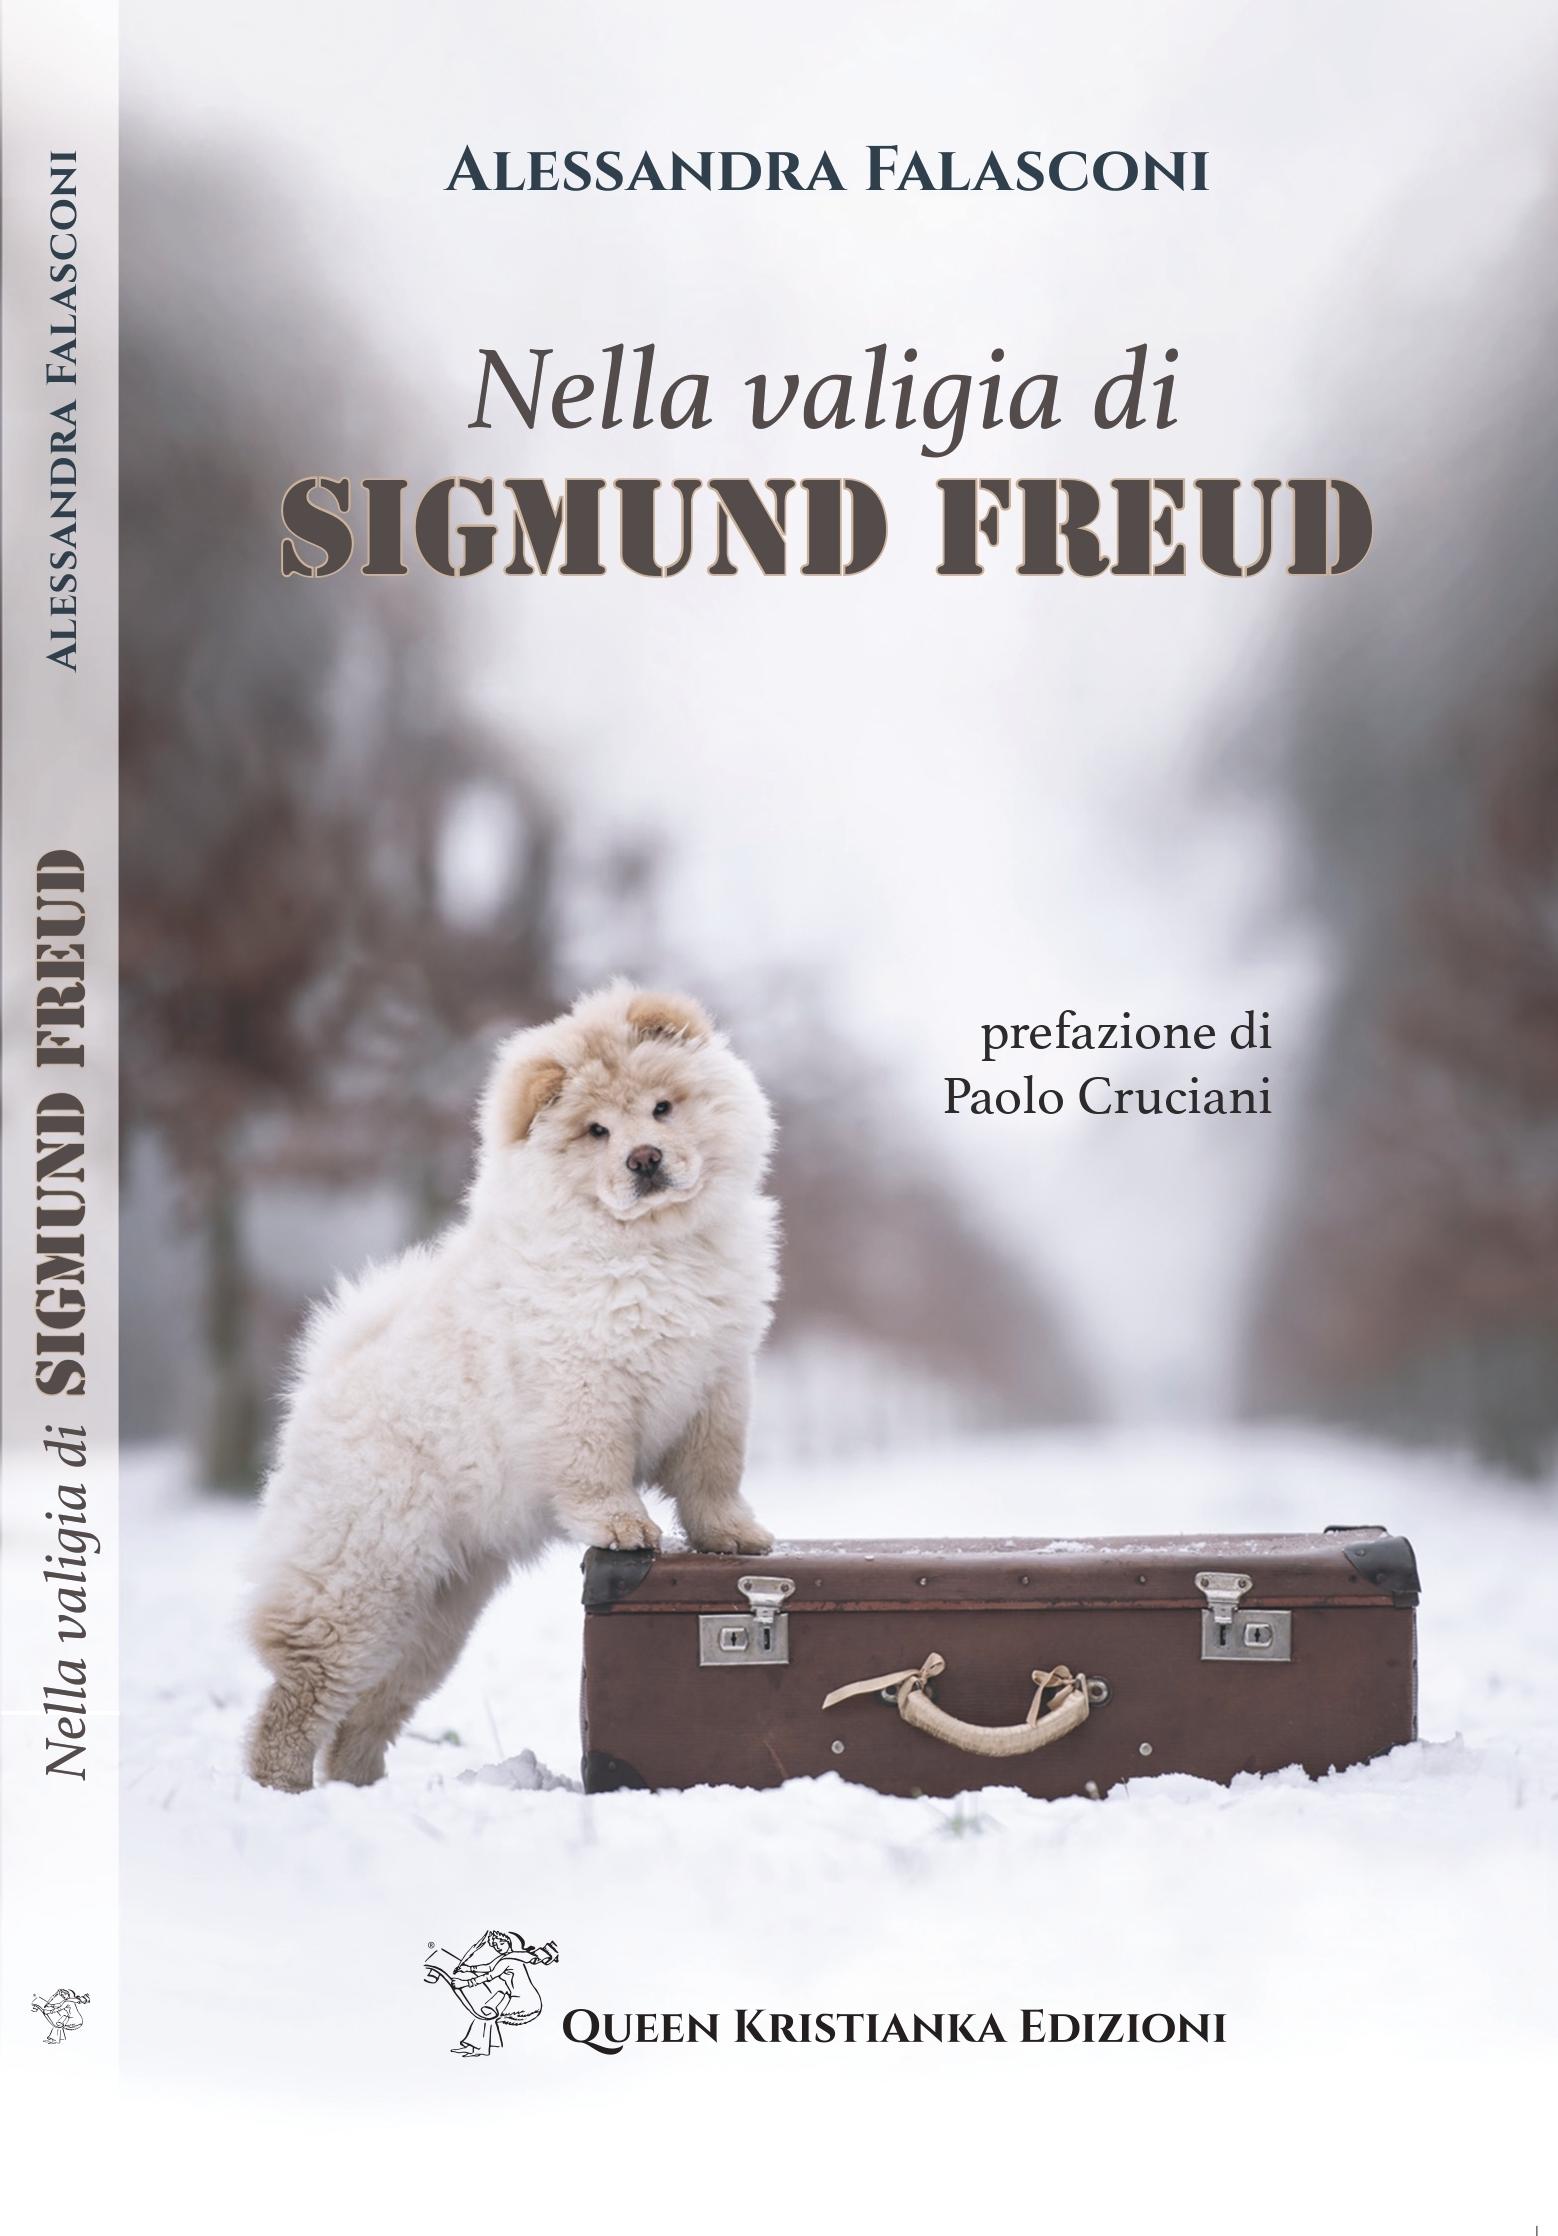 Nella valigia di Sigmund Freud di Alessandra Falasconi